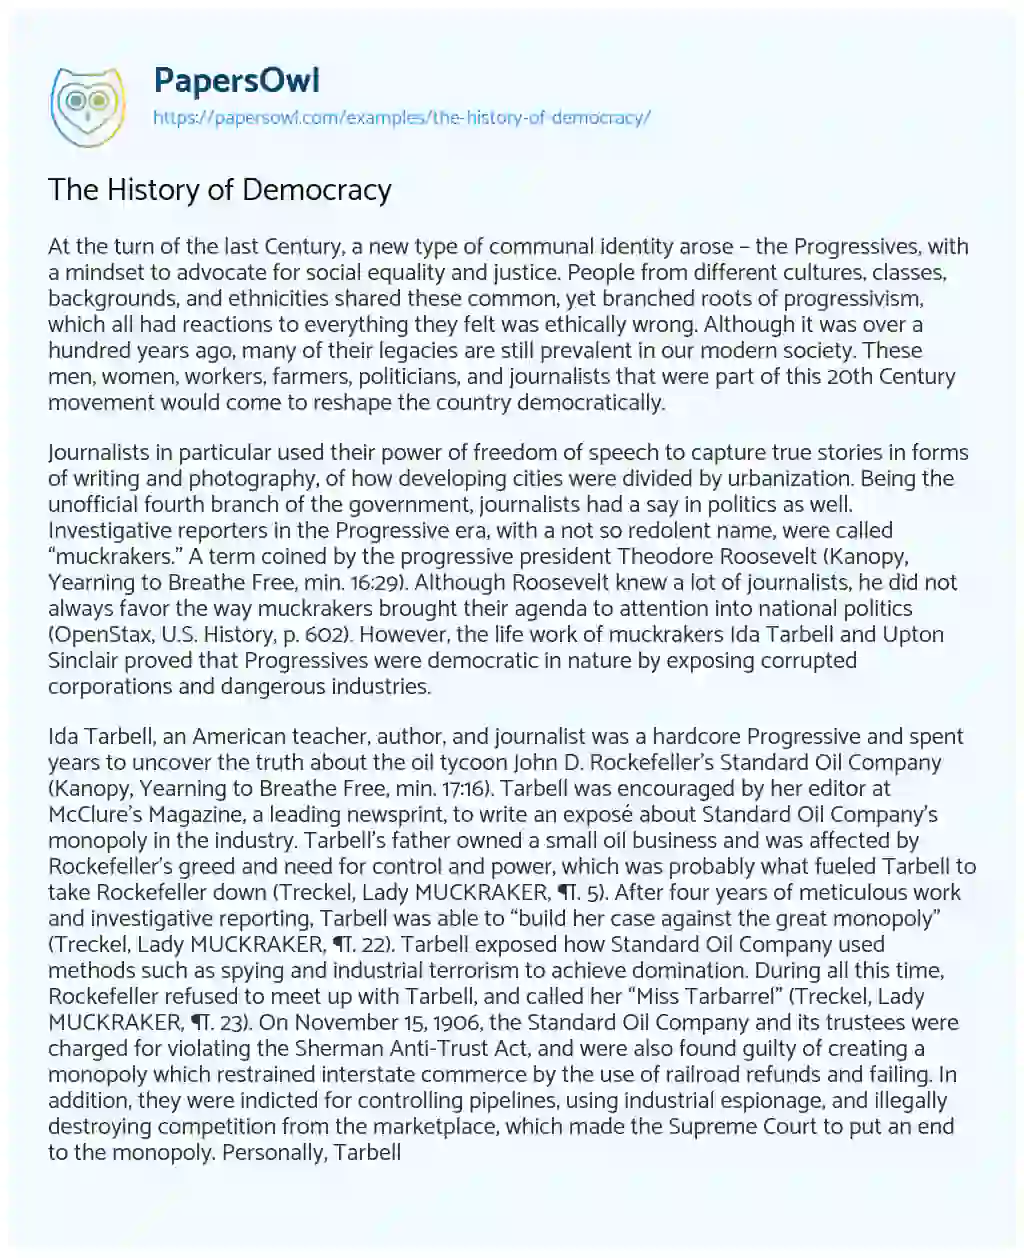 The History of Democracy essay